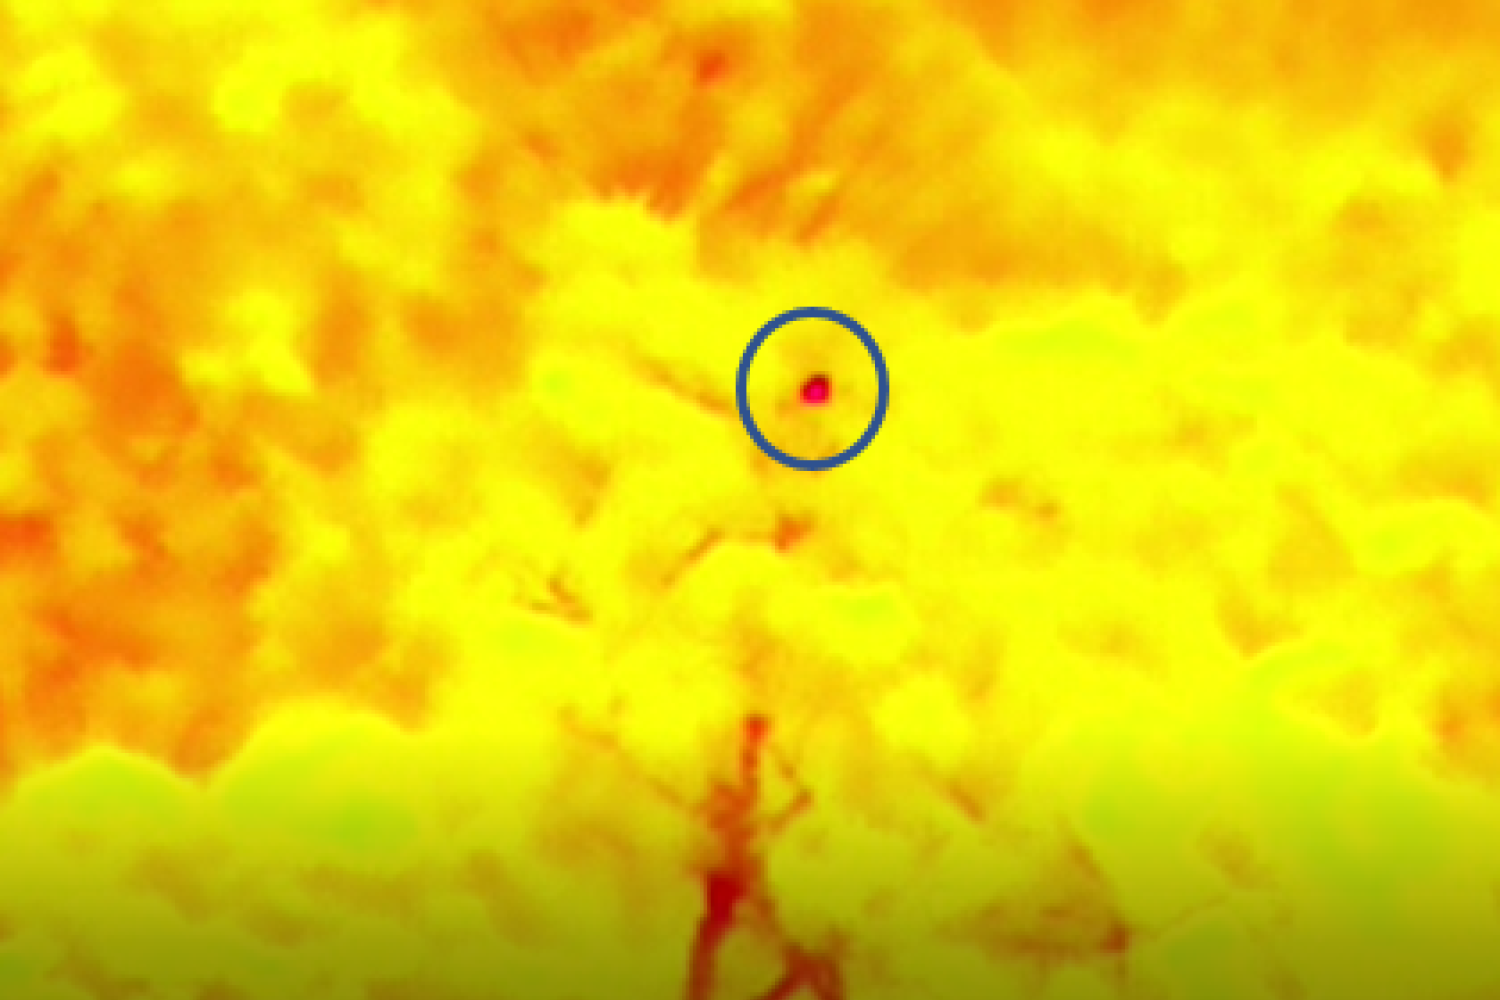 Image thermique d'un kwata, capturée par un drone thermique, aux Nouragues